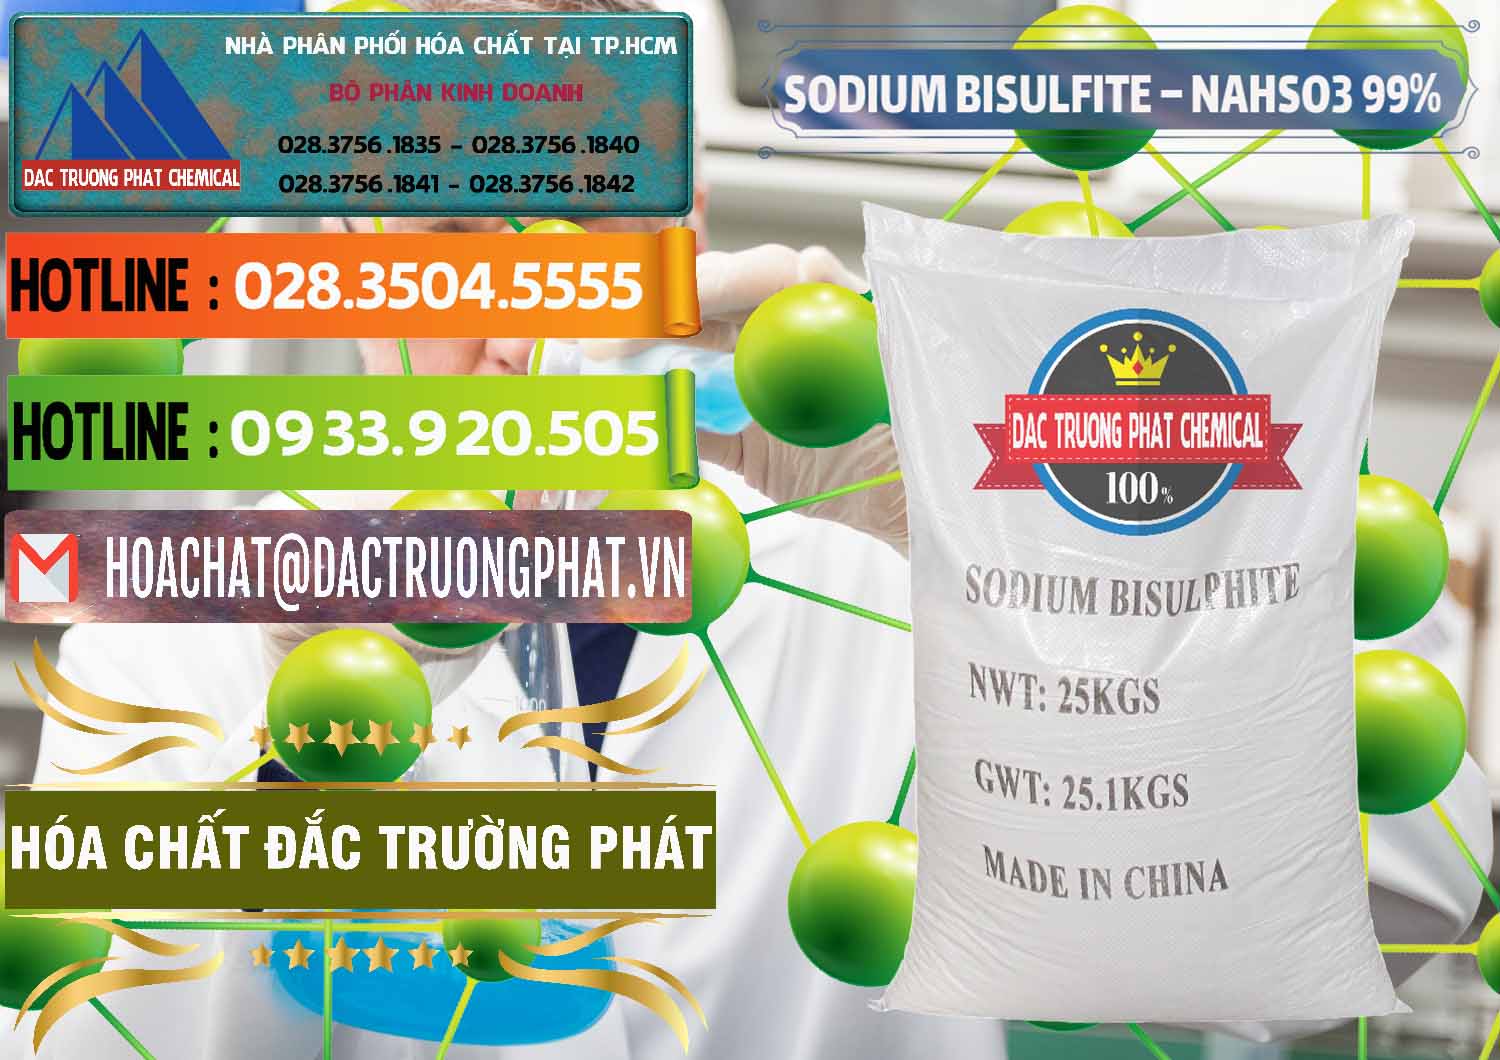 Chuyên phân phối ( bán ) Sodium Bisulfite – NAHSO3 Trung Quốc China - 0140 - Công ty bán và cung cấp hóa chất tại TP.HCM - cungcaphoachat.com.vn